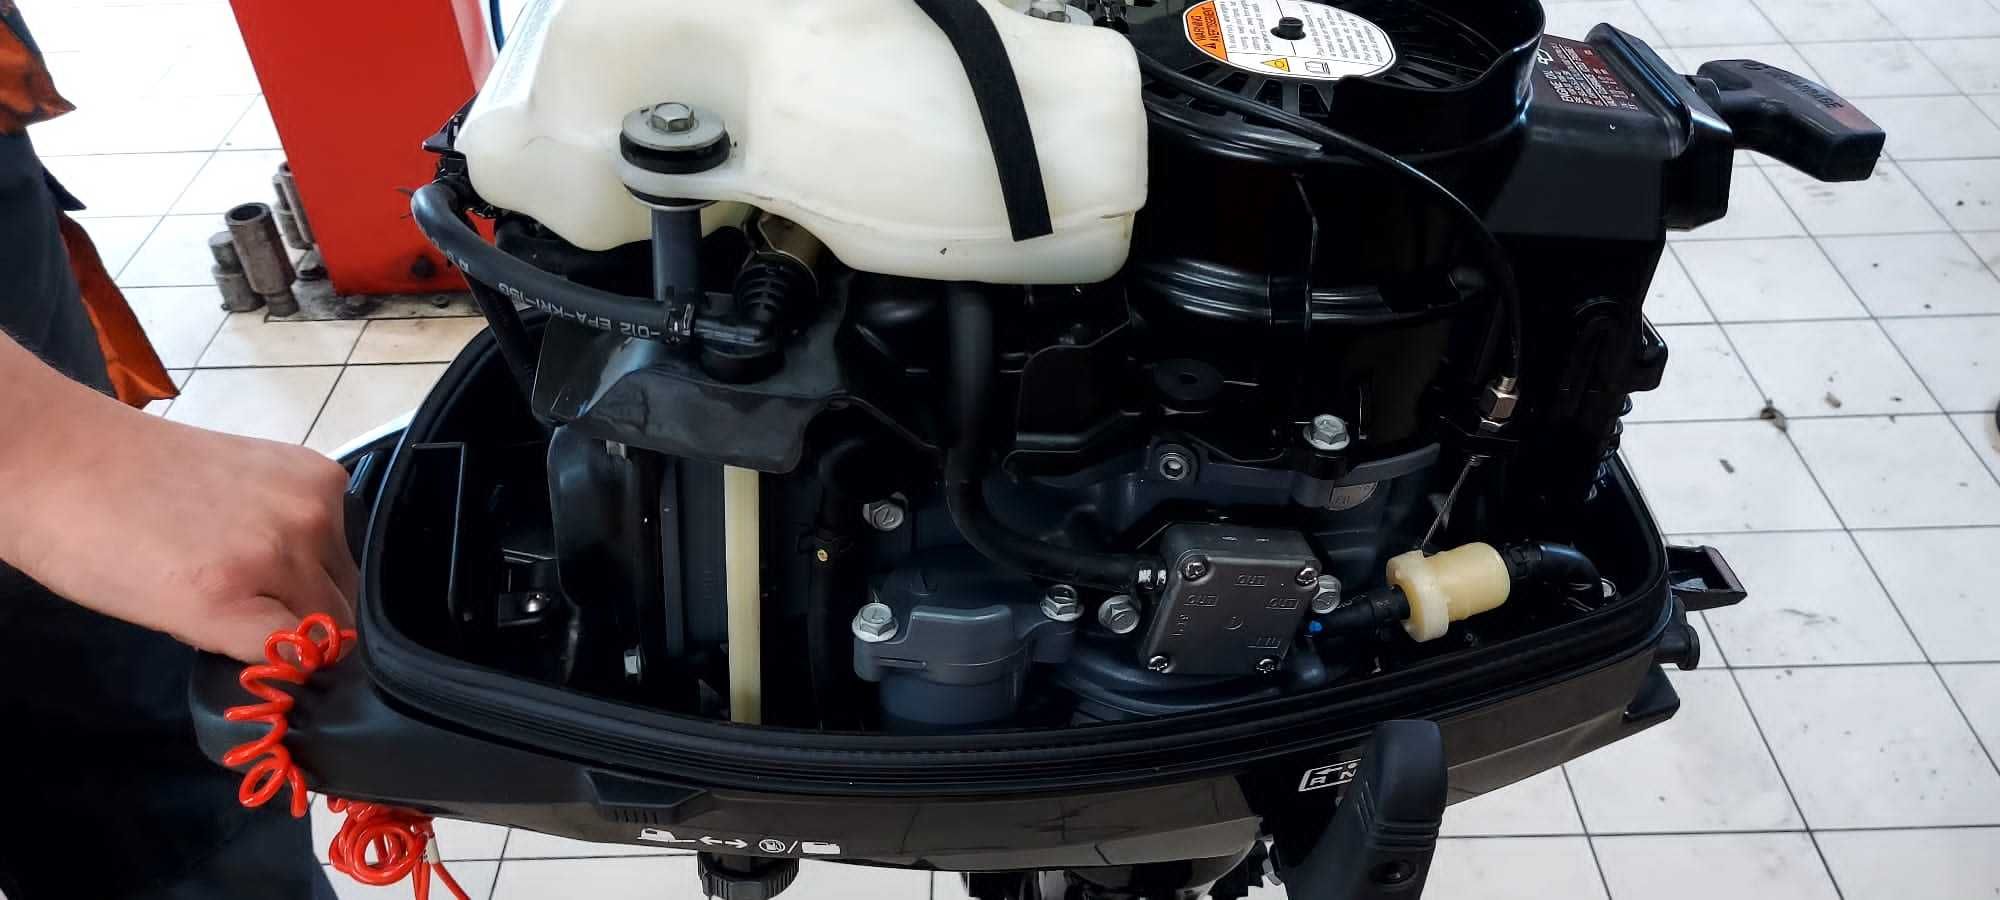 Silnik zaburtowy Suzuki-DF5,4-takt,rok 2017.stopa "S".Motorówka.